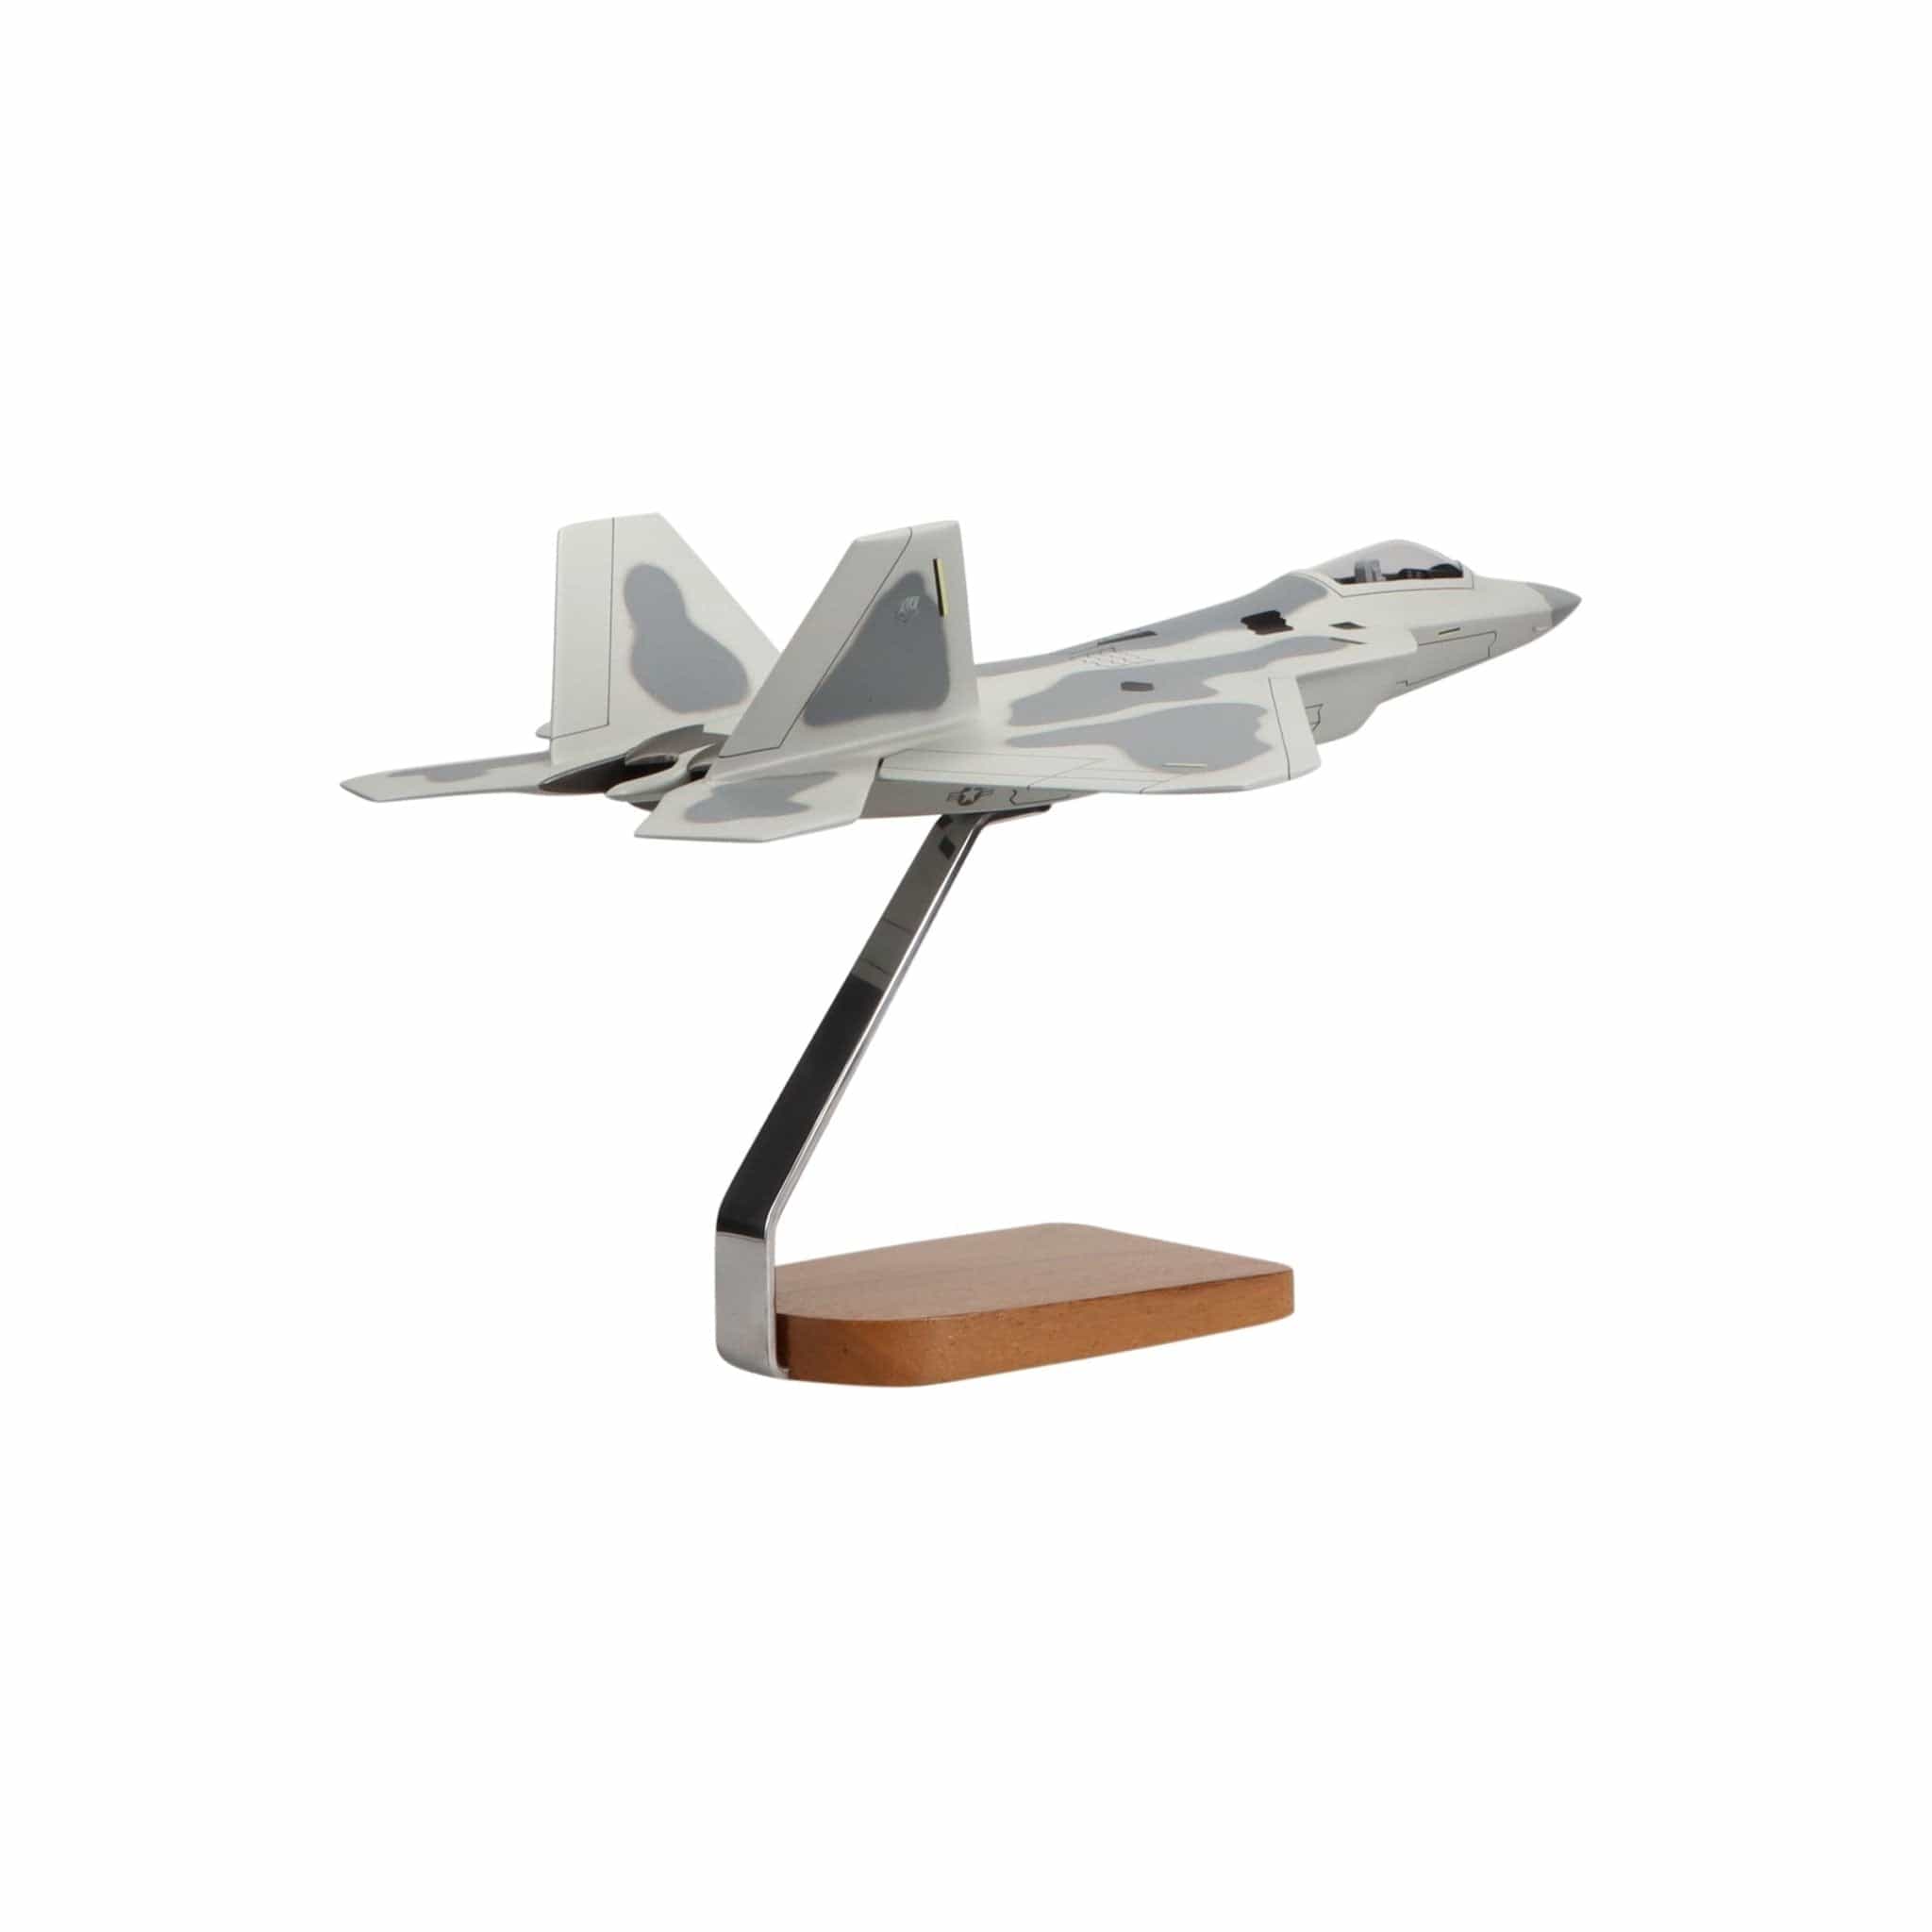 Lockheed Martin F-22 Raptor® Clear Canopy Large Mahogany Model